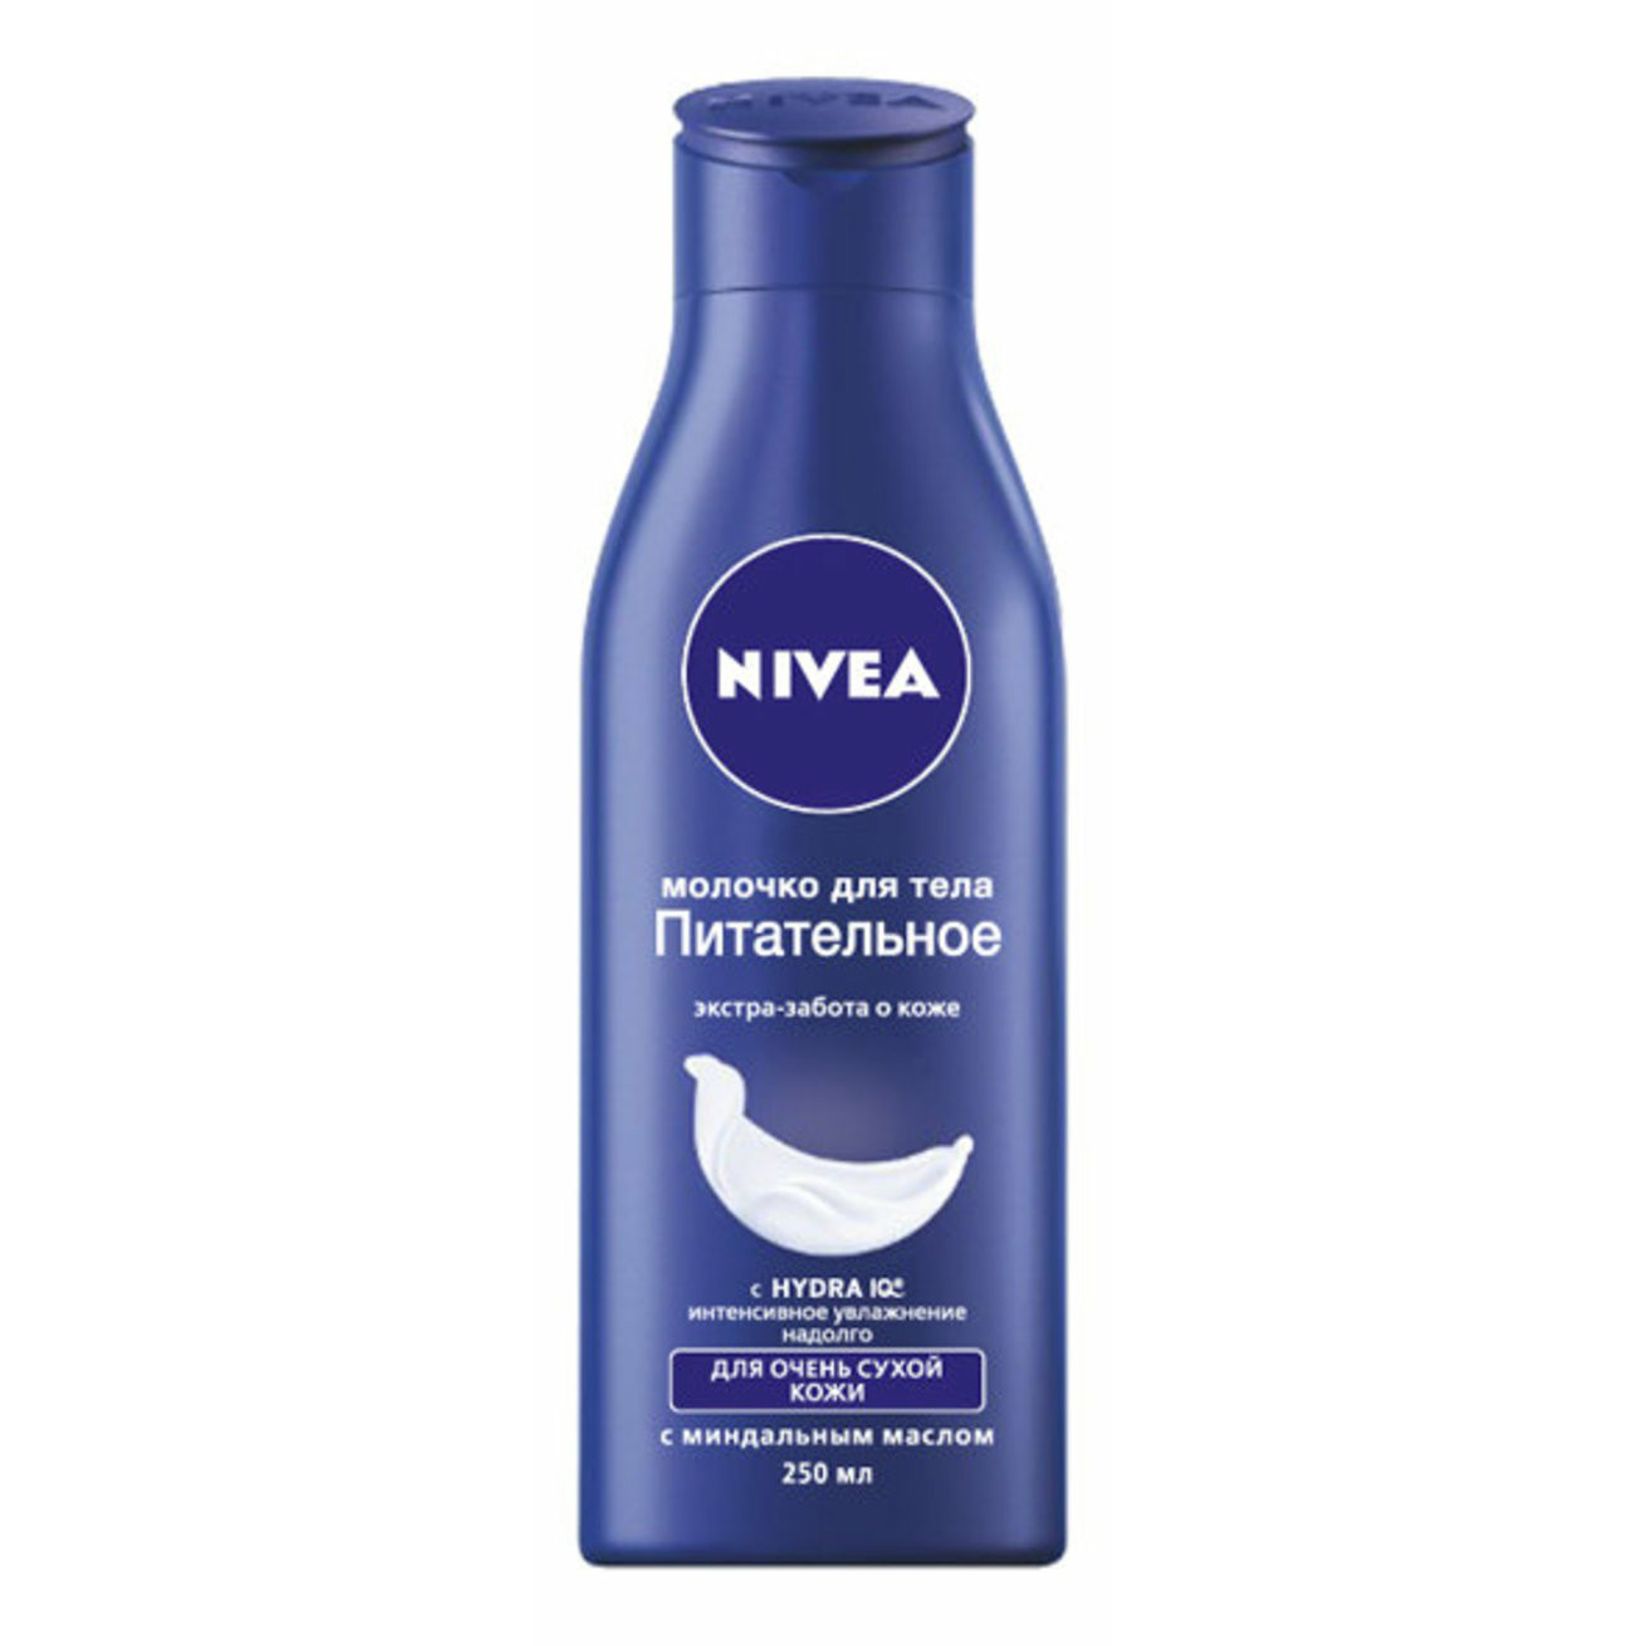 NIVEA Молочко для тела с витамином Е 250 мл